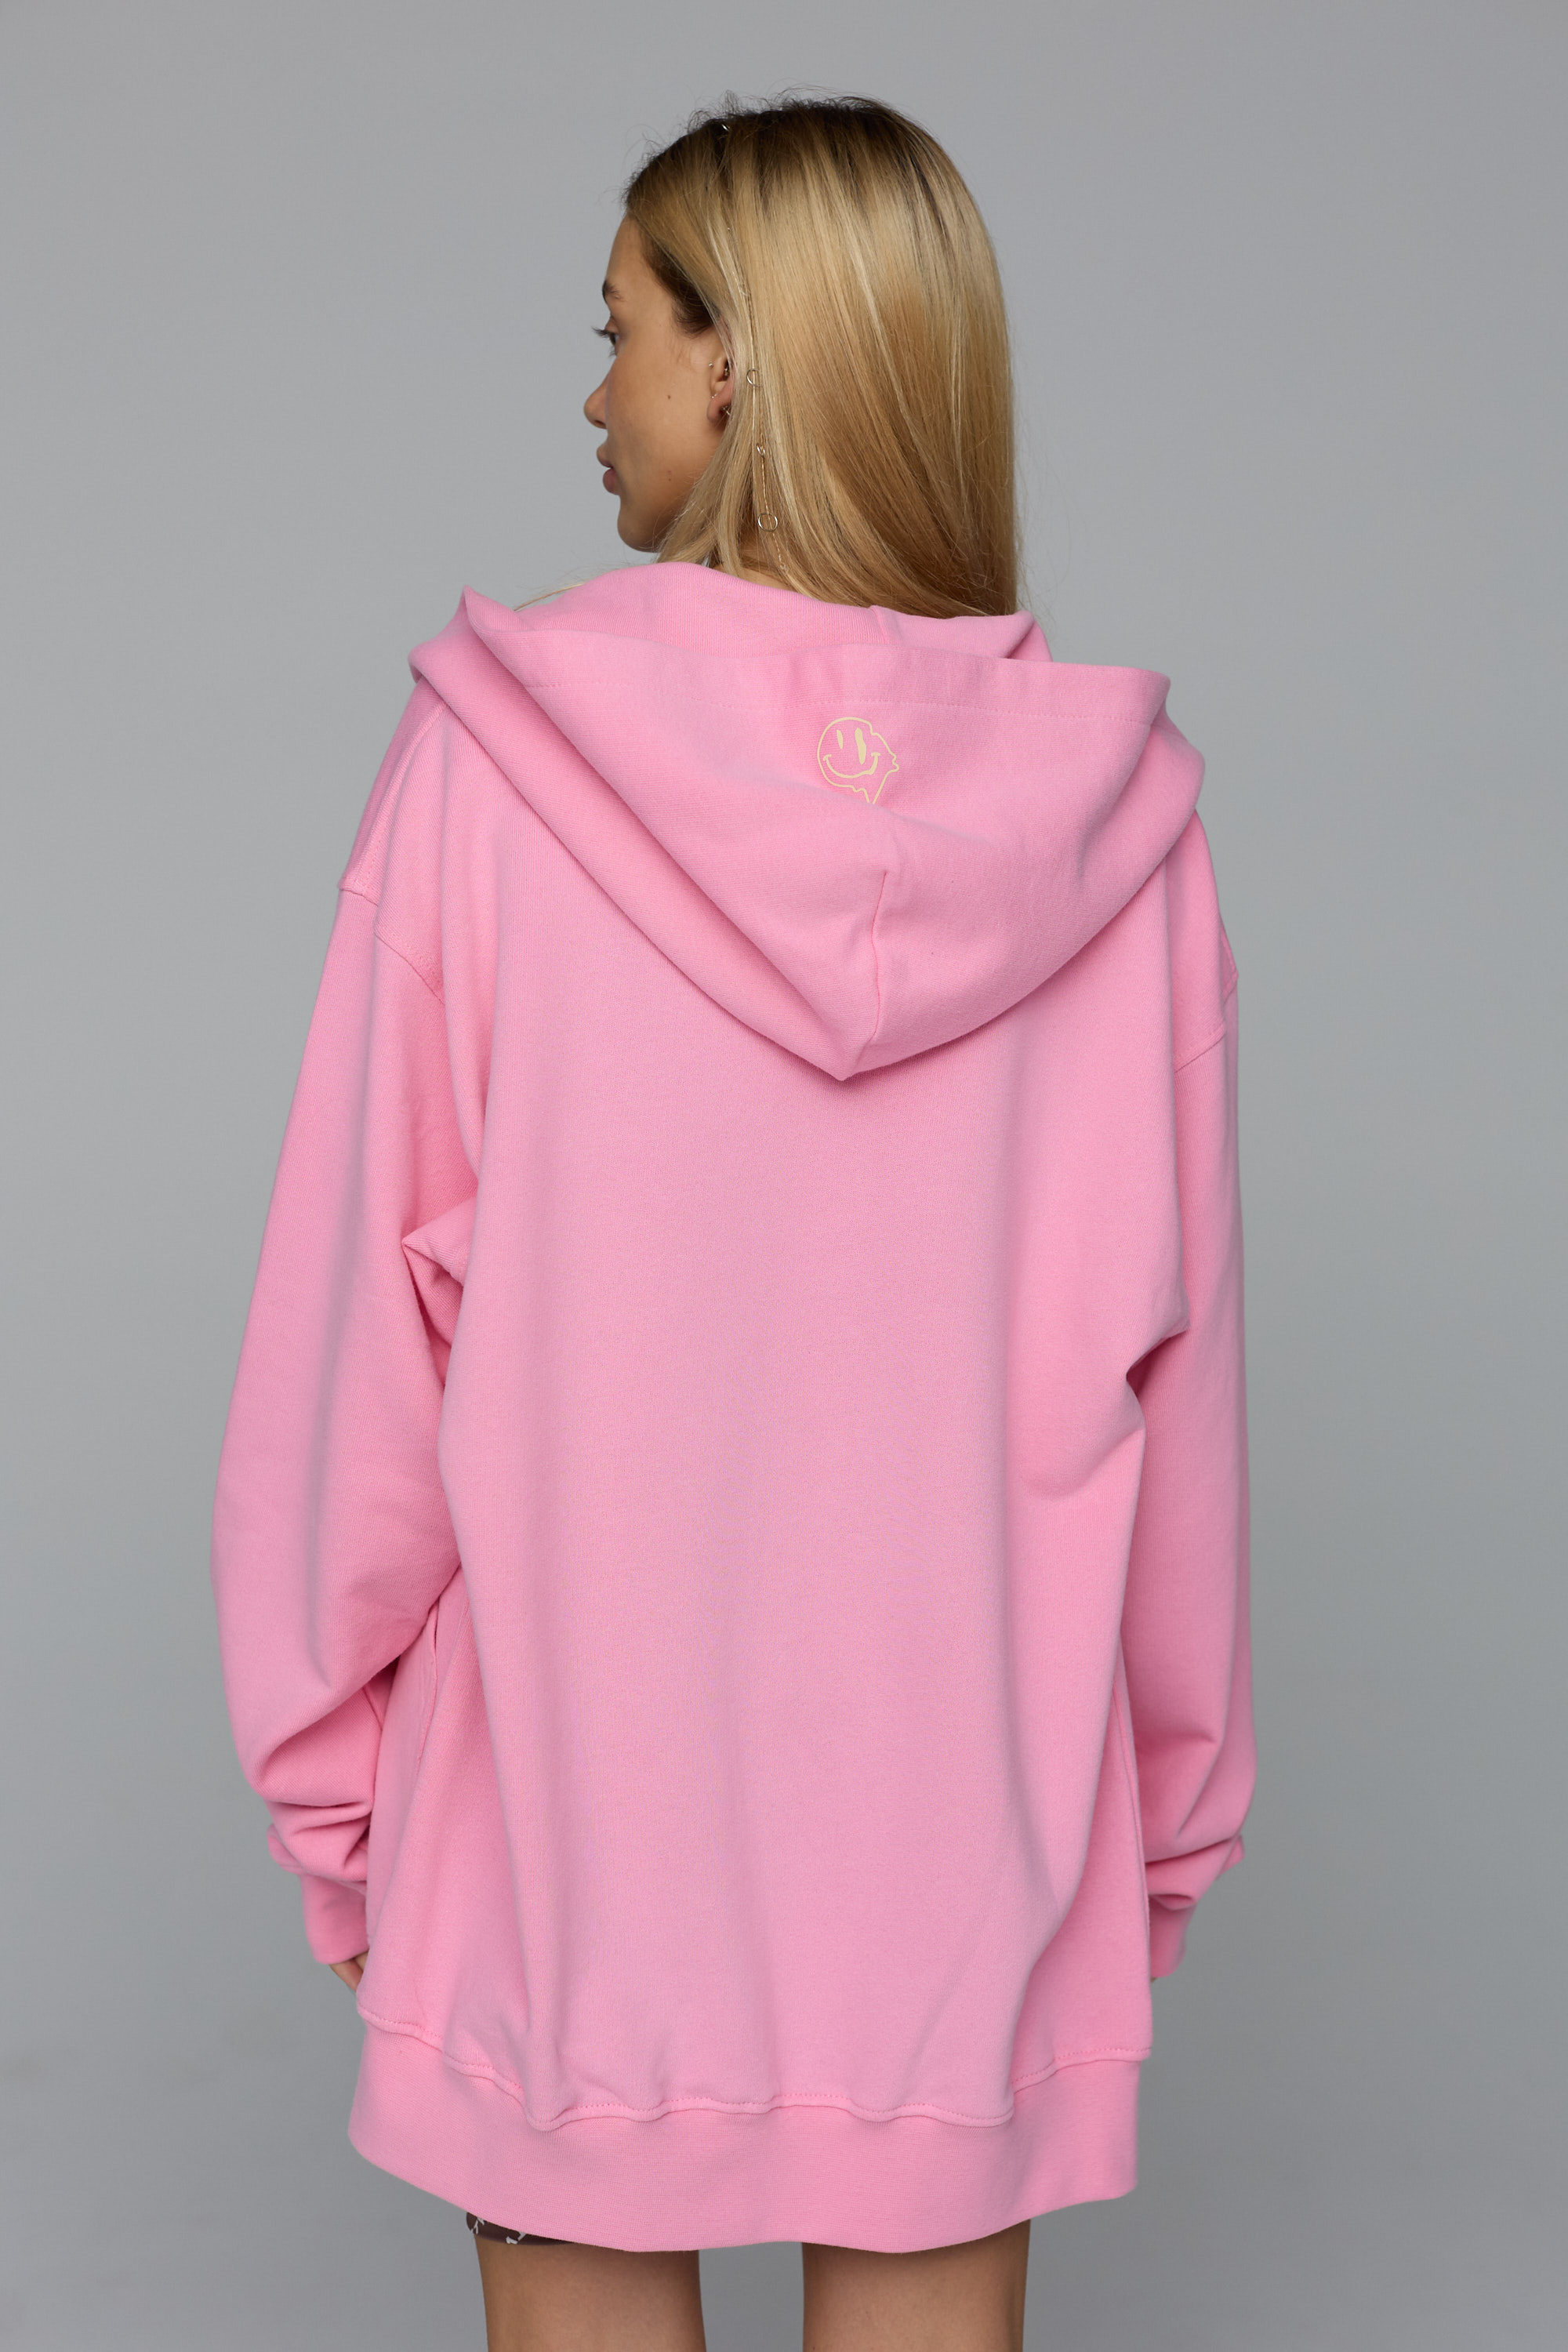 zip-up hoodie  in bubble color